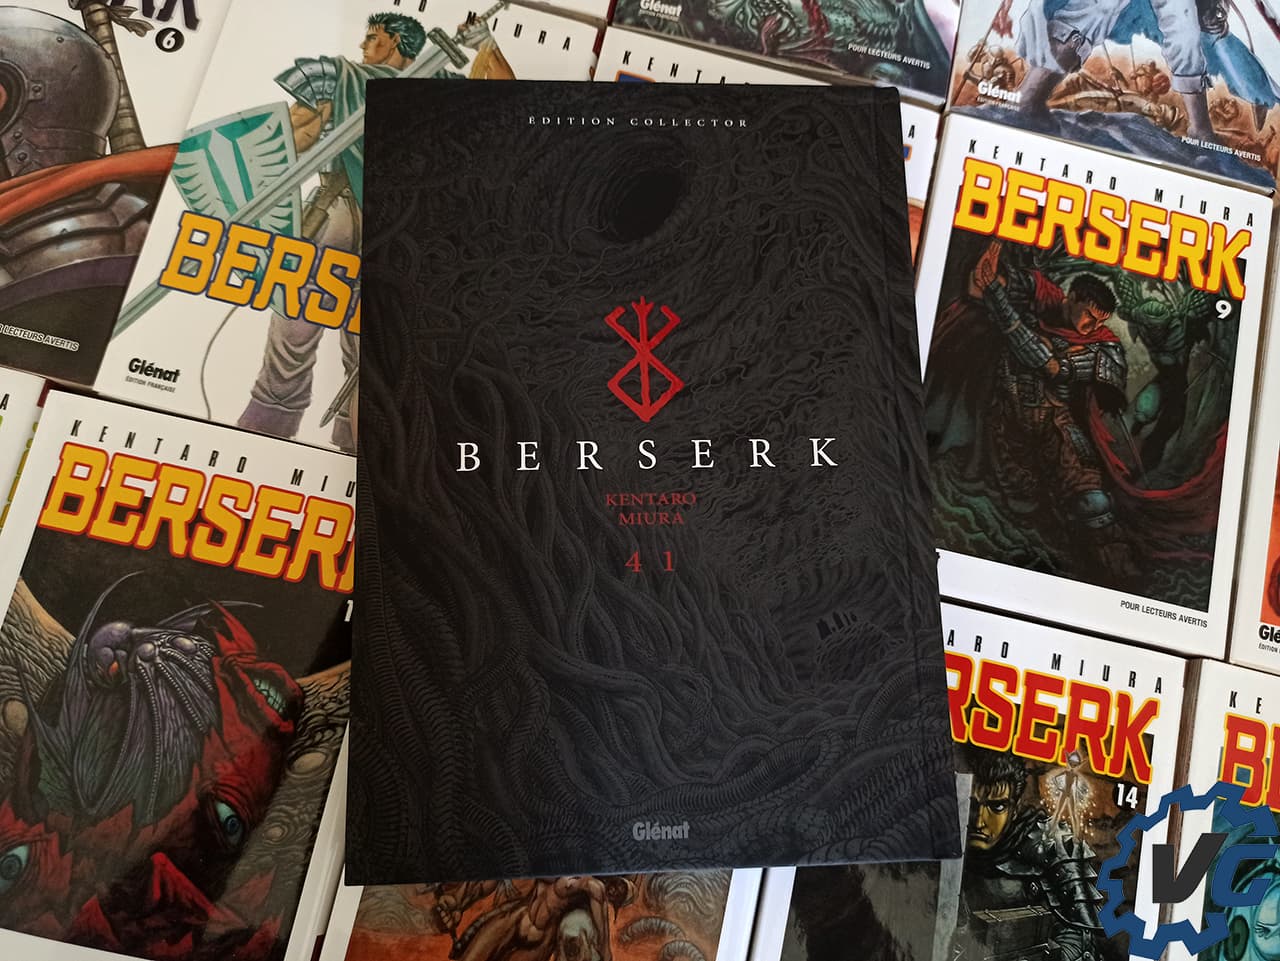 Berserk - tome 41 Collector